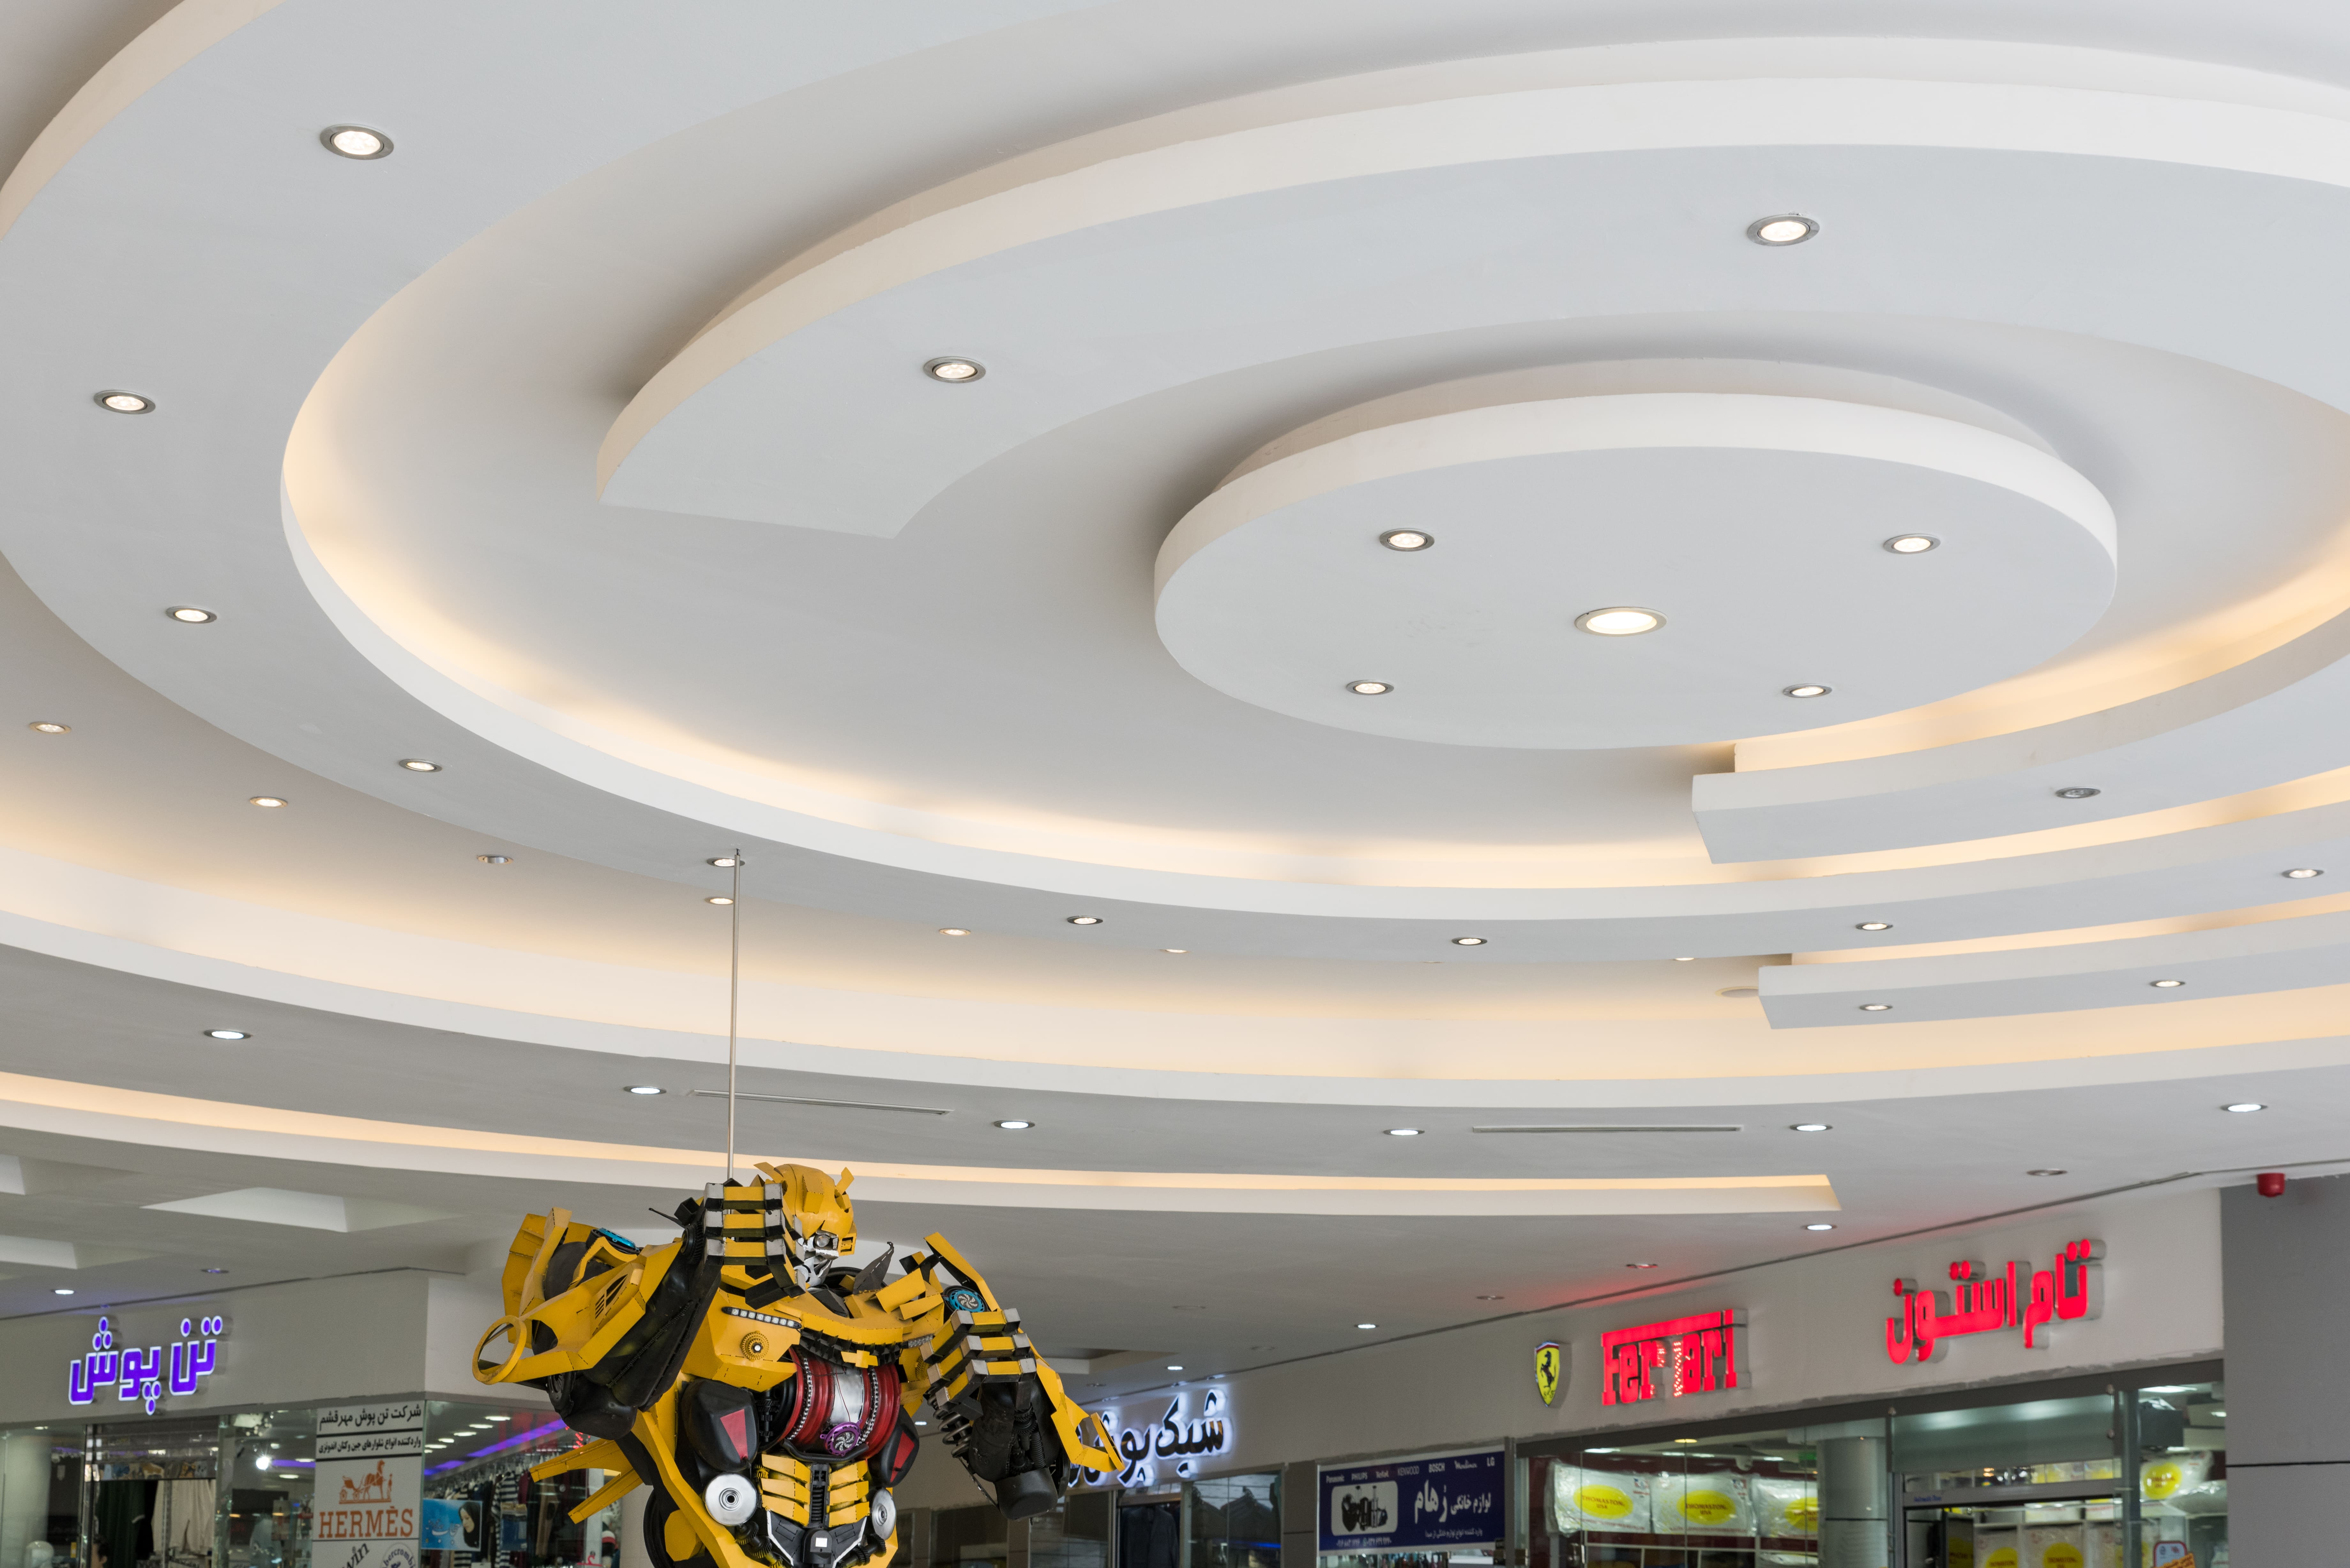 ایده های نورپردازی در سقف یا محصولات کی پلاس